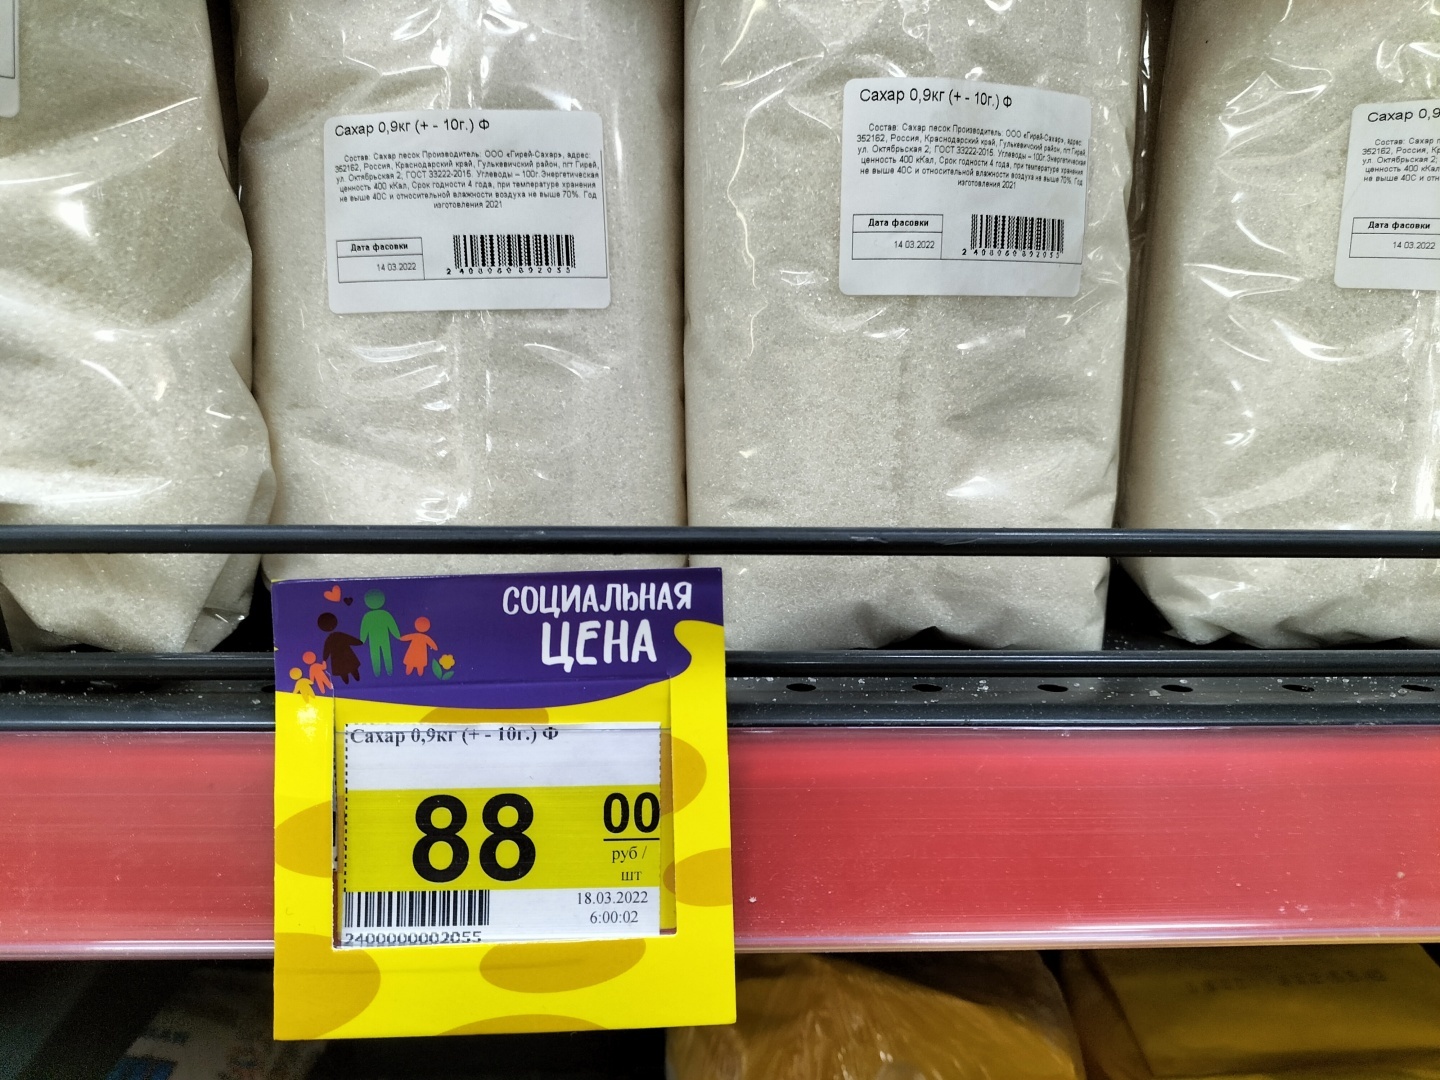 Сахар пятерочка цена 1 кг сегодня. Цена сахара. Ценник на сахар. Сколько стоит сахар сегодня. Сахар в Крыму сегодня за кг.